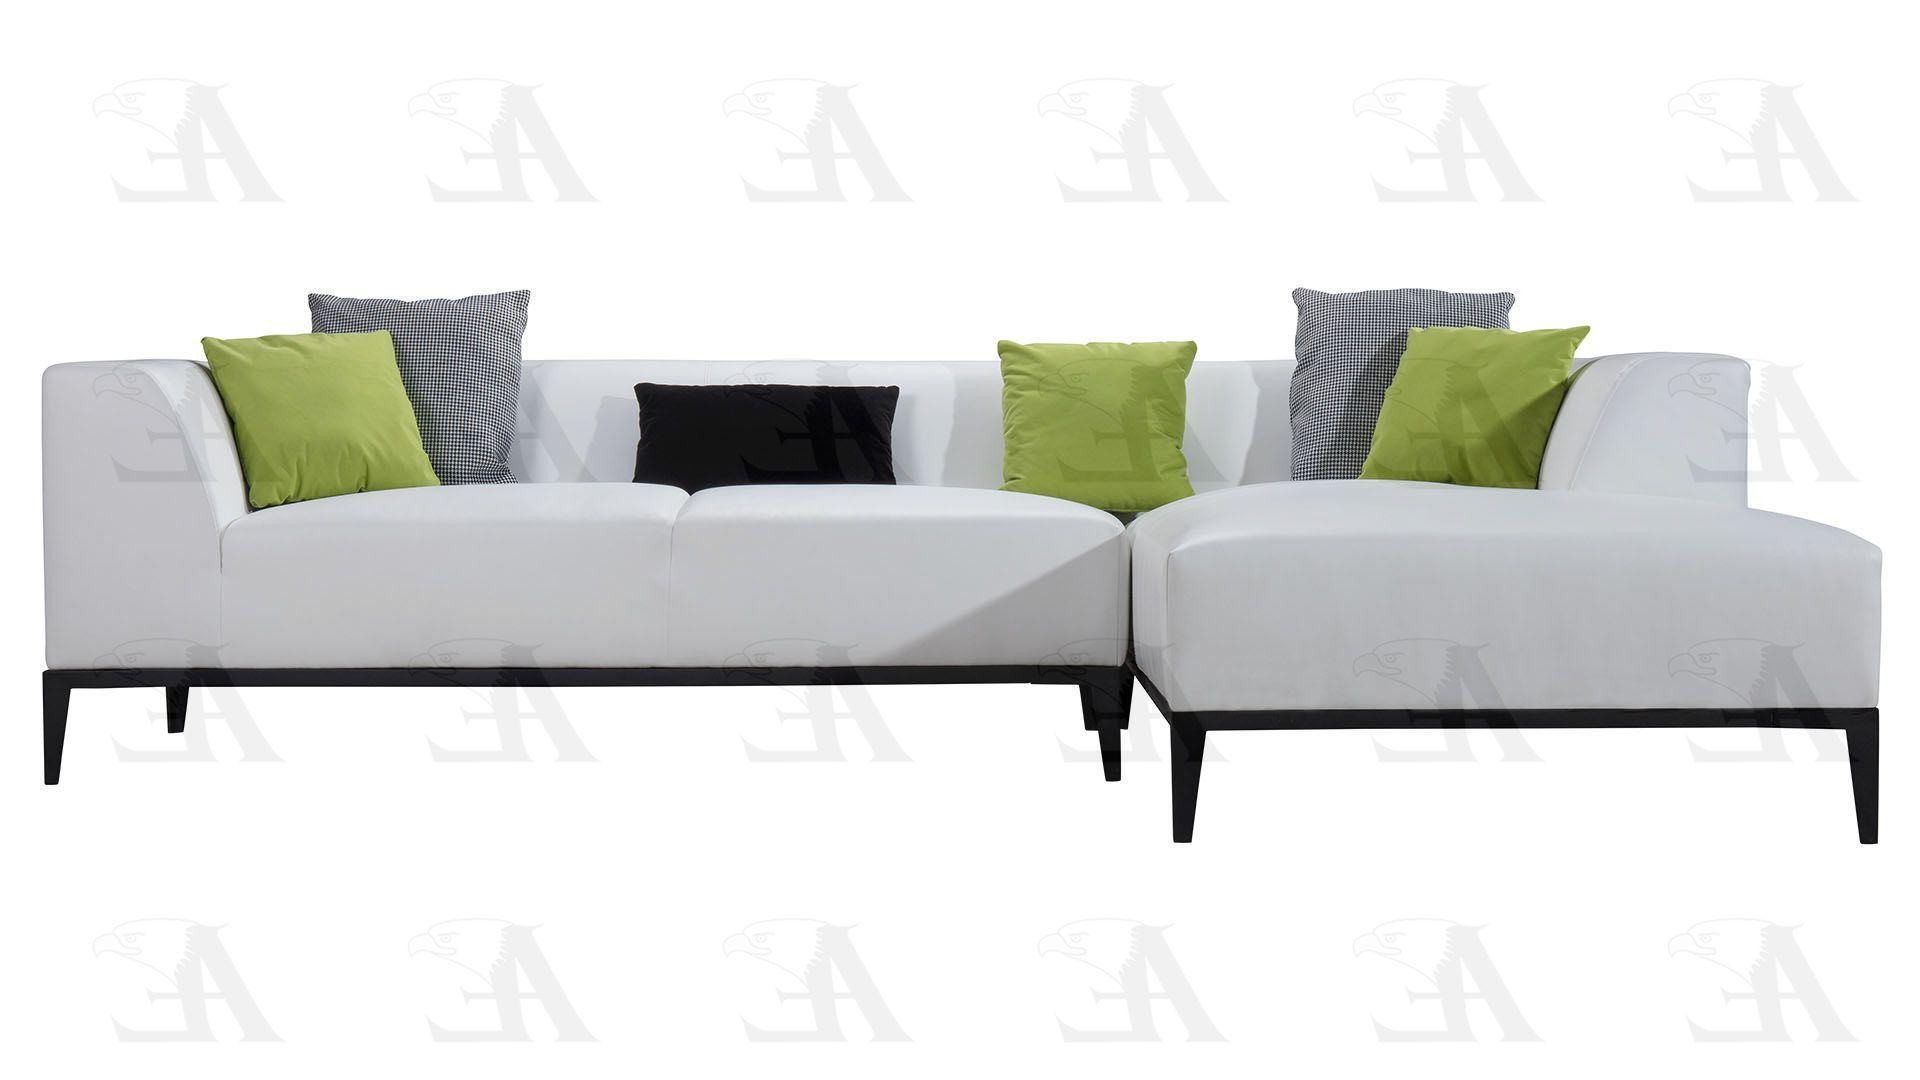 

    
American Eagle Furniture AE-LD818-W-2PCS Sofa Chaise White AE-LD818-W-2PCS RHC
